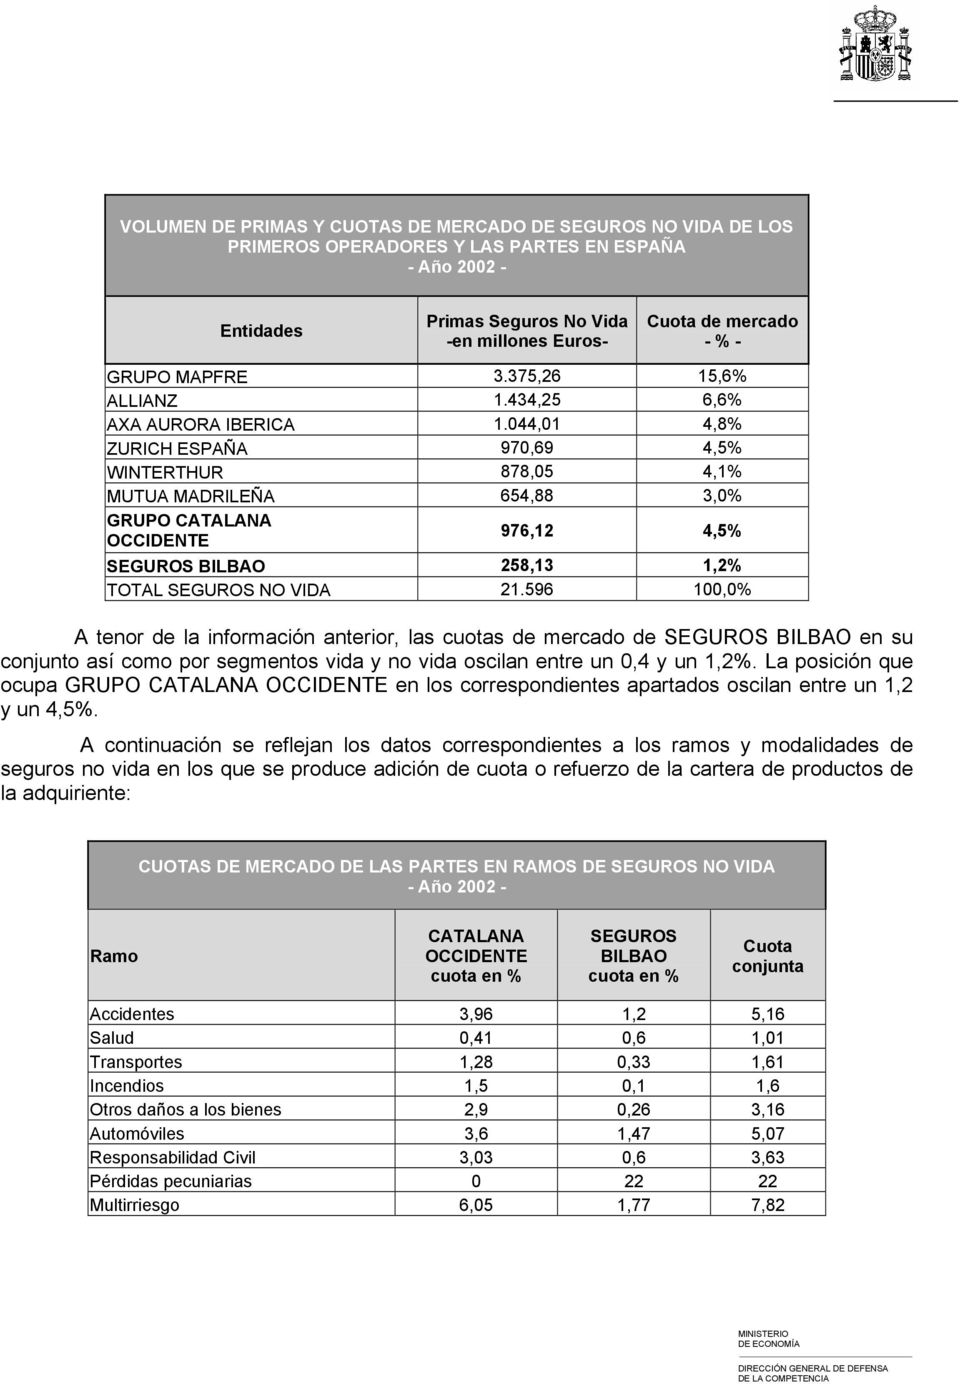 044,01 4,8% ZURICH ESPAÑA 970,69 4,5% WINTERTHUR 878,05 4,1% MUTUA MADRILEÑA 654,88 3,0% GRUPO CATALANA OCCIDENTE 976,12 4,5% SEGUROS BILBAO 258,13 1,2% TOTAL SEGUROS NO VIDA 21.